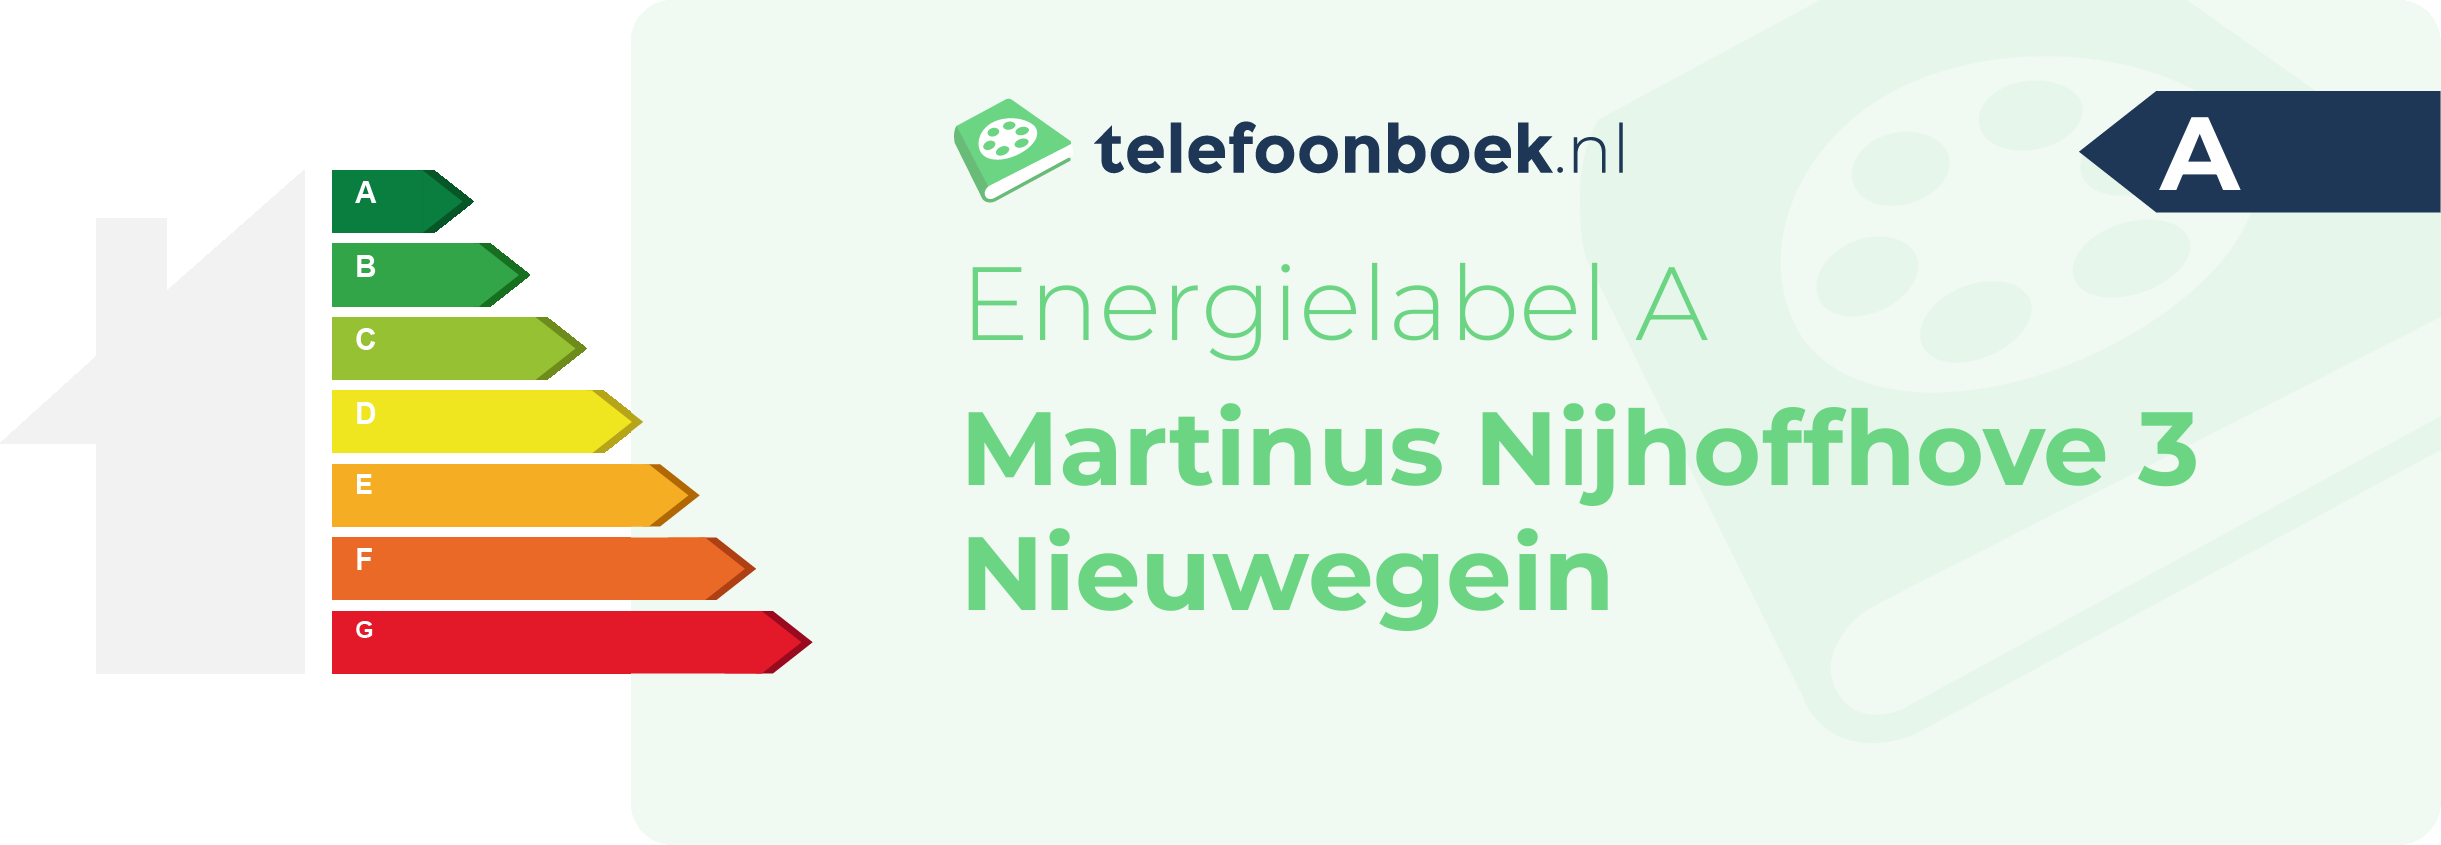 Energielabel Martinus Nijhoffhove 3 Nieuwegein